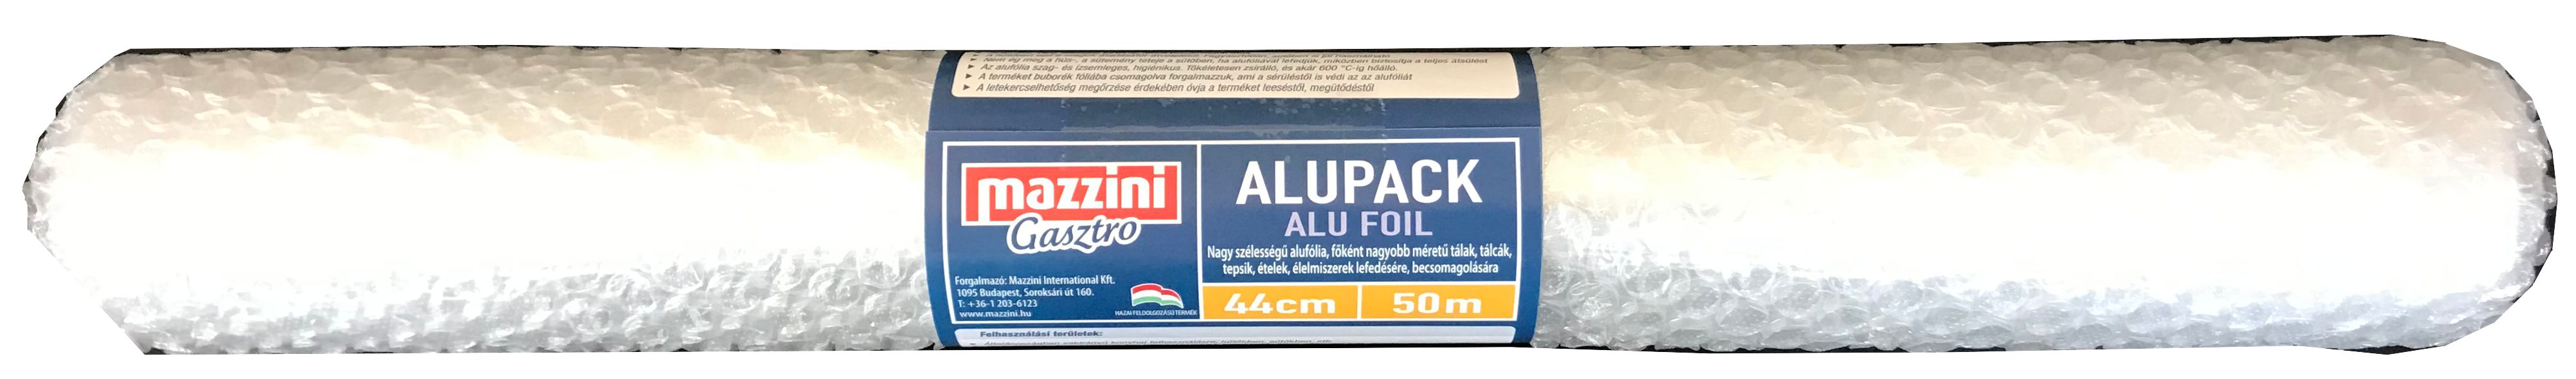 .Mazzini Alupack 44cmx50m vastag